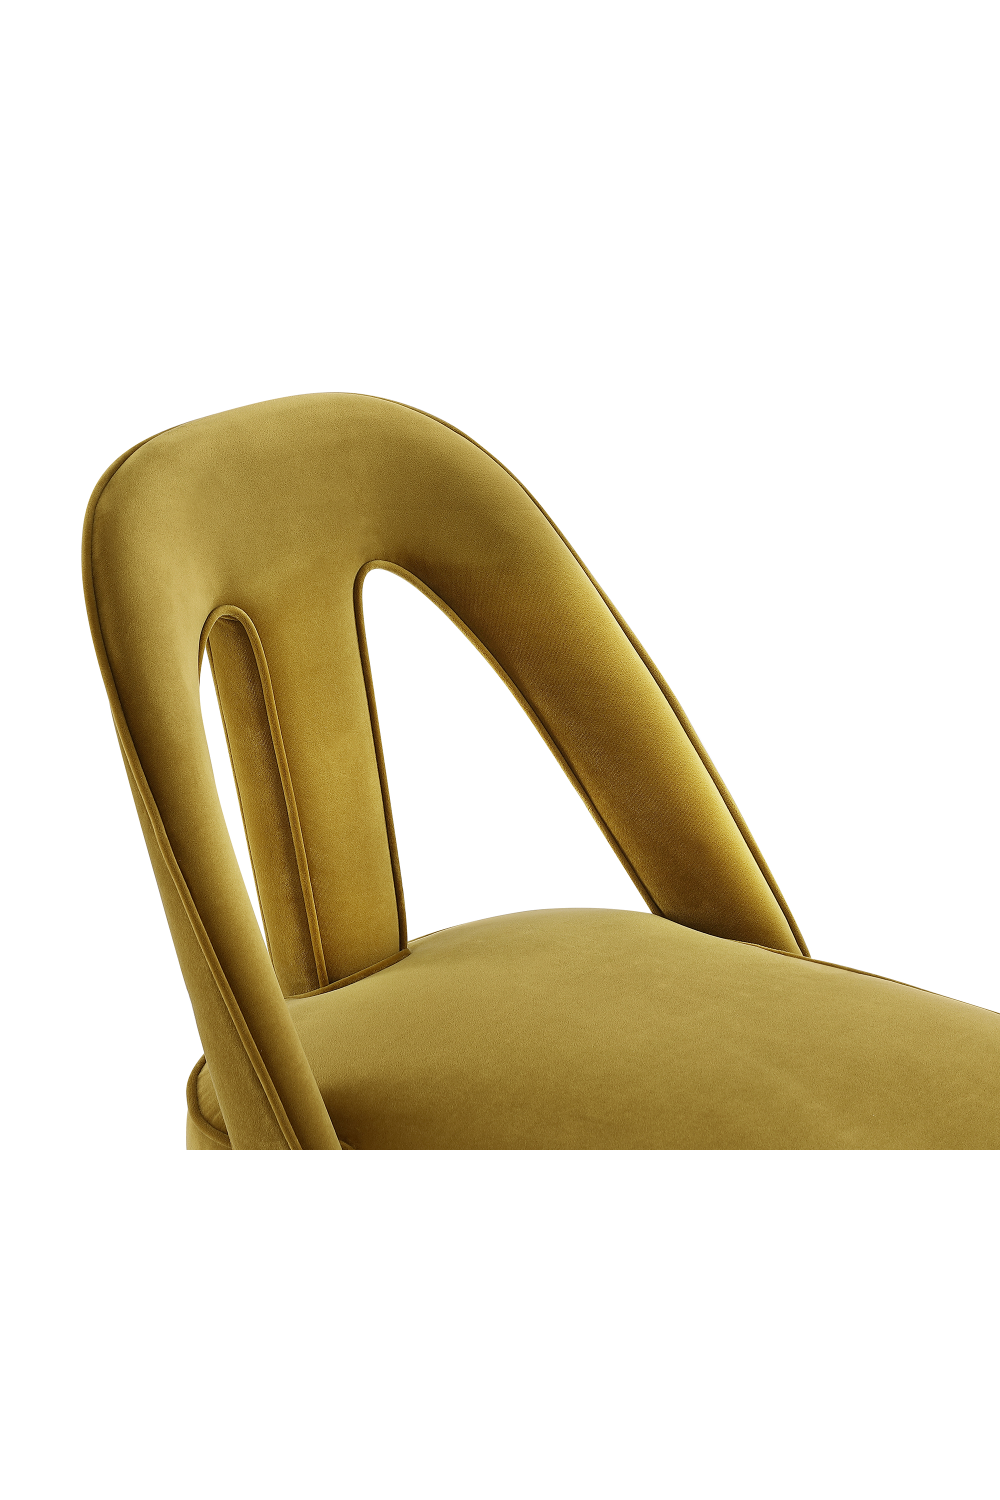 Mustard Velvet Dining Chair | Liang & Eimil Pigalle  | Oroa.com